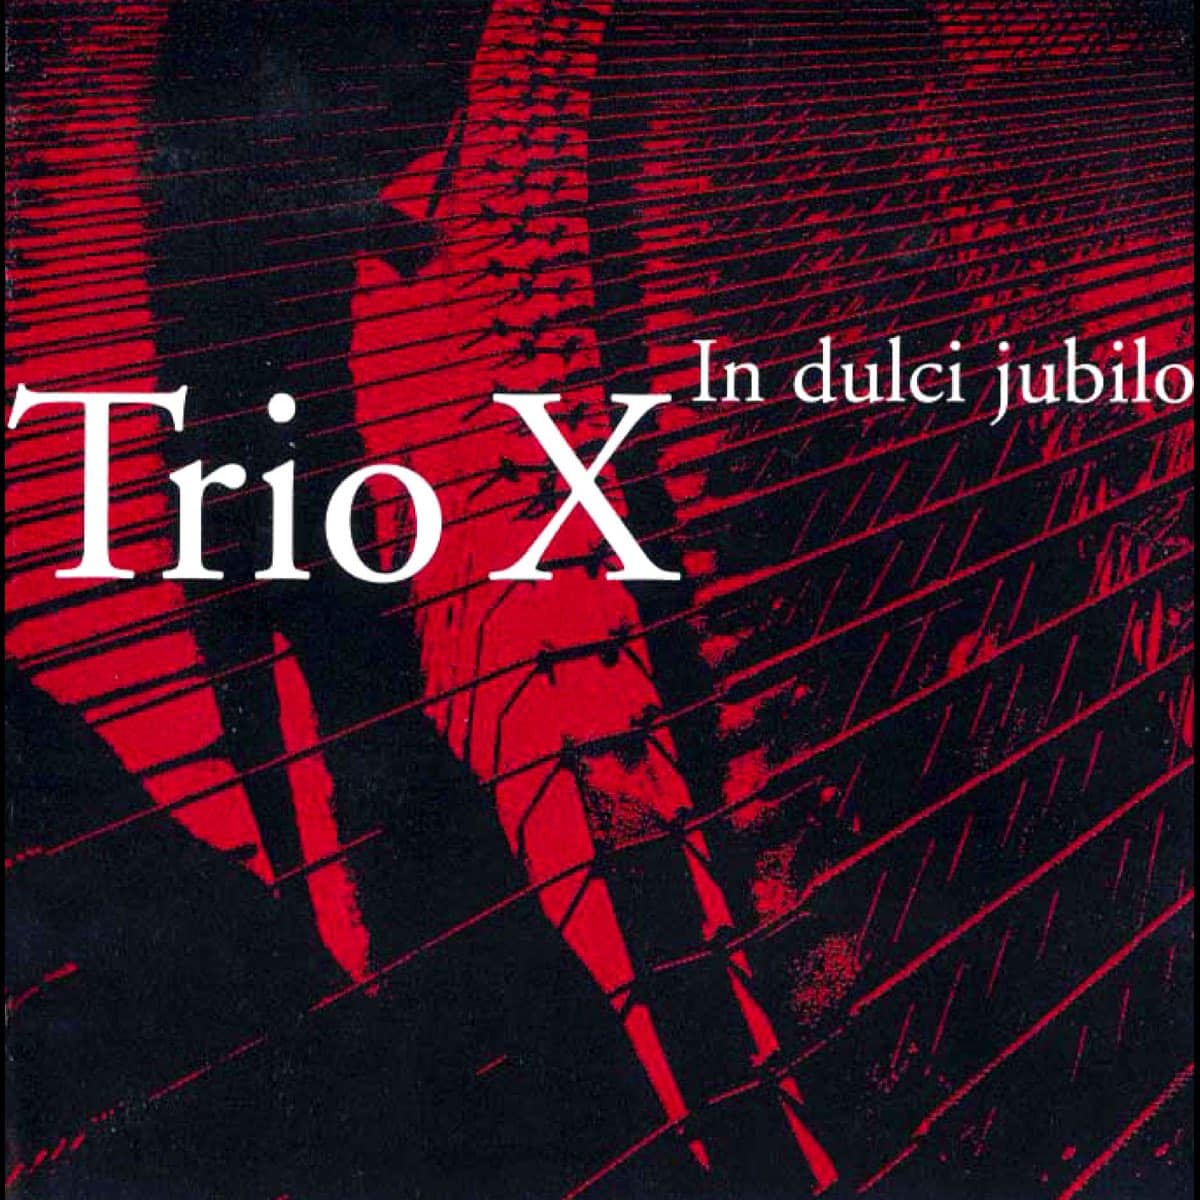 Albumomslag till In dulci jubilo av Trio X